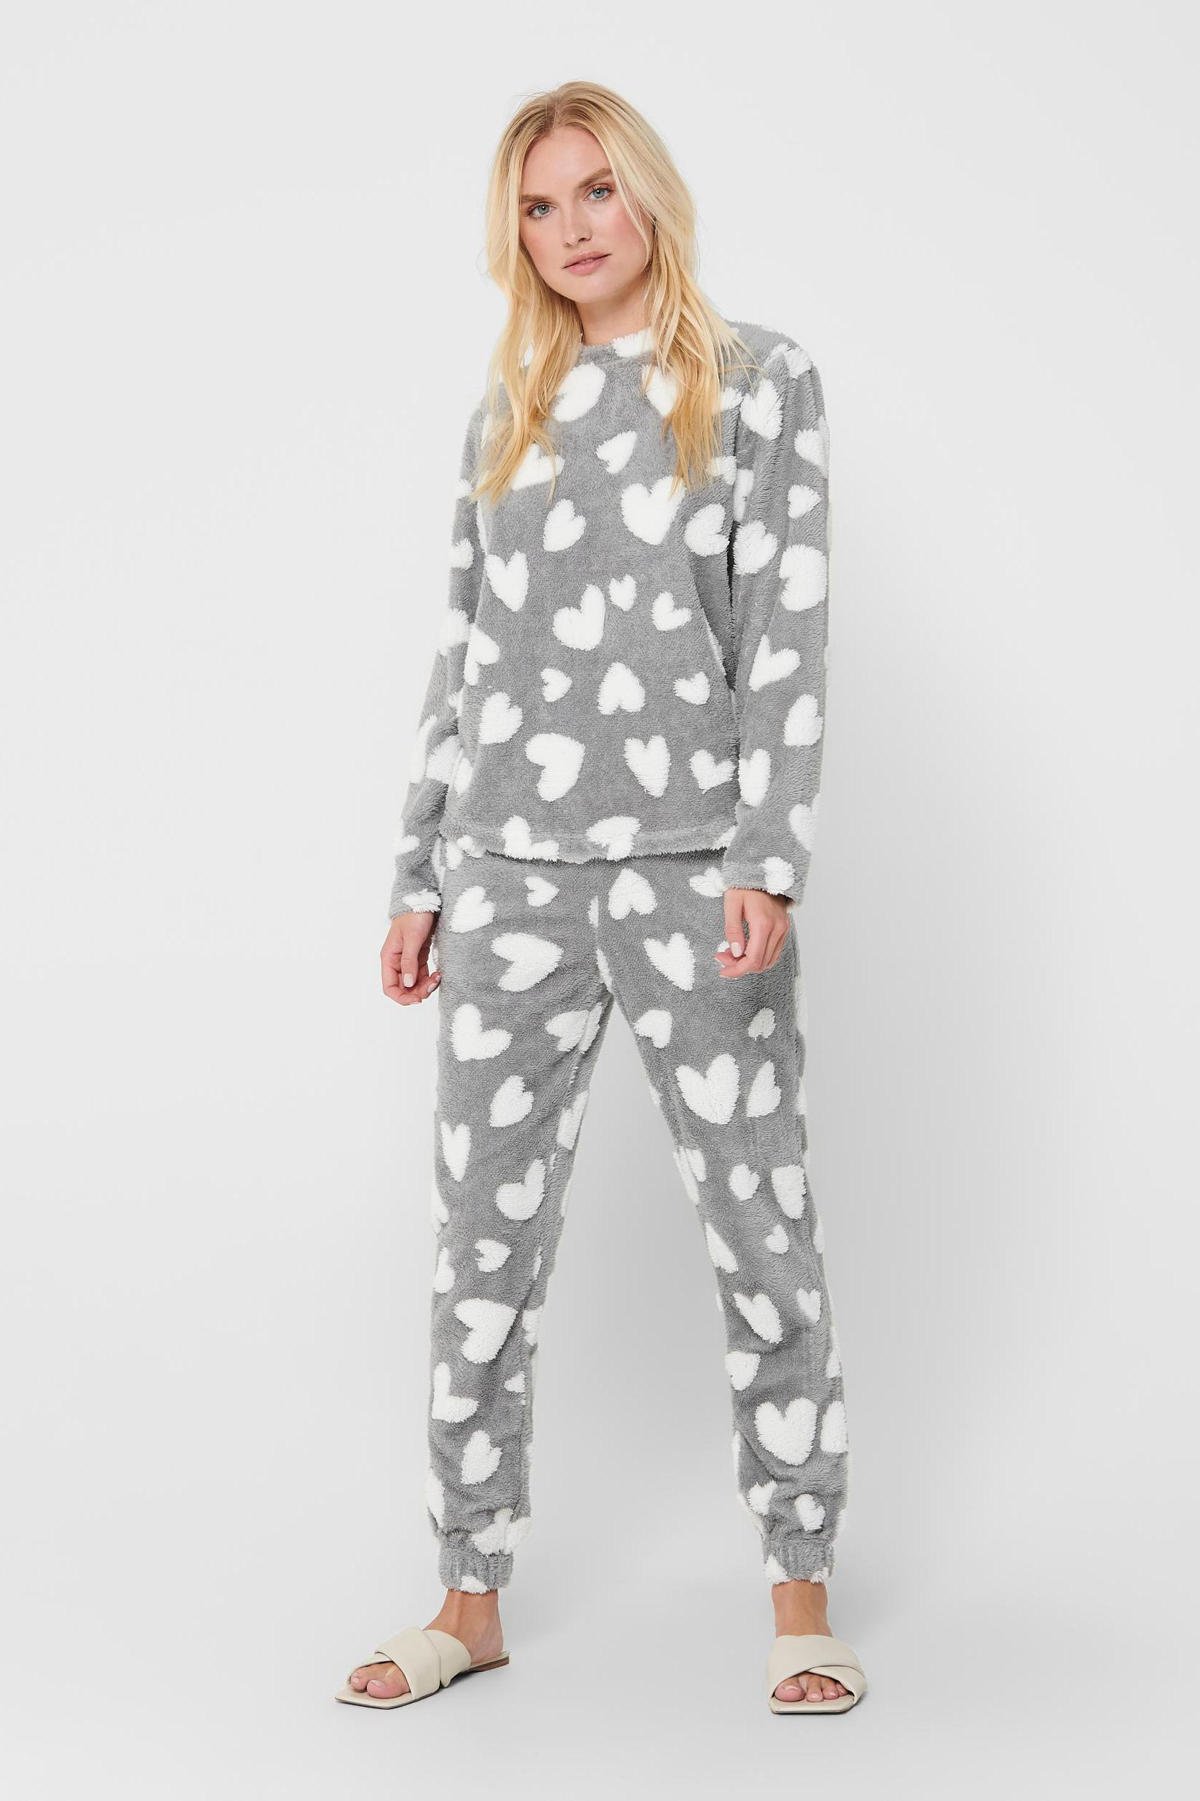 Onzin Natura overschot ONLY fleece pyjama Caya met hartjes print grijs/wit | wehkamp